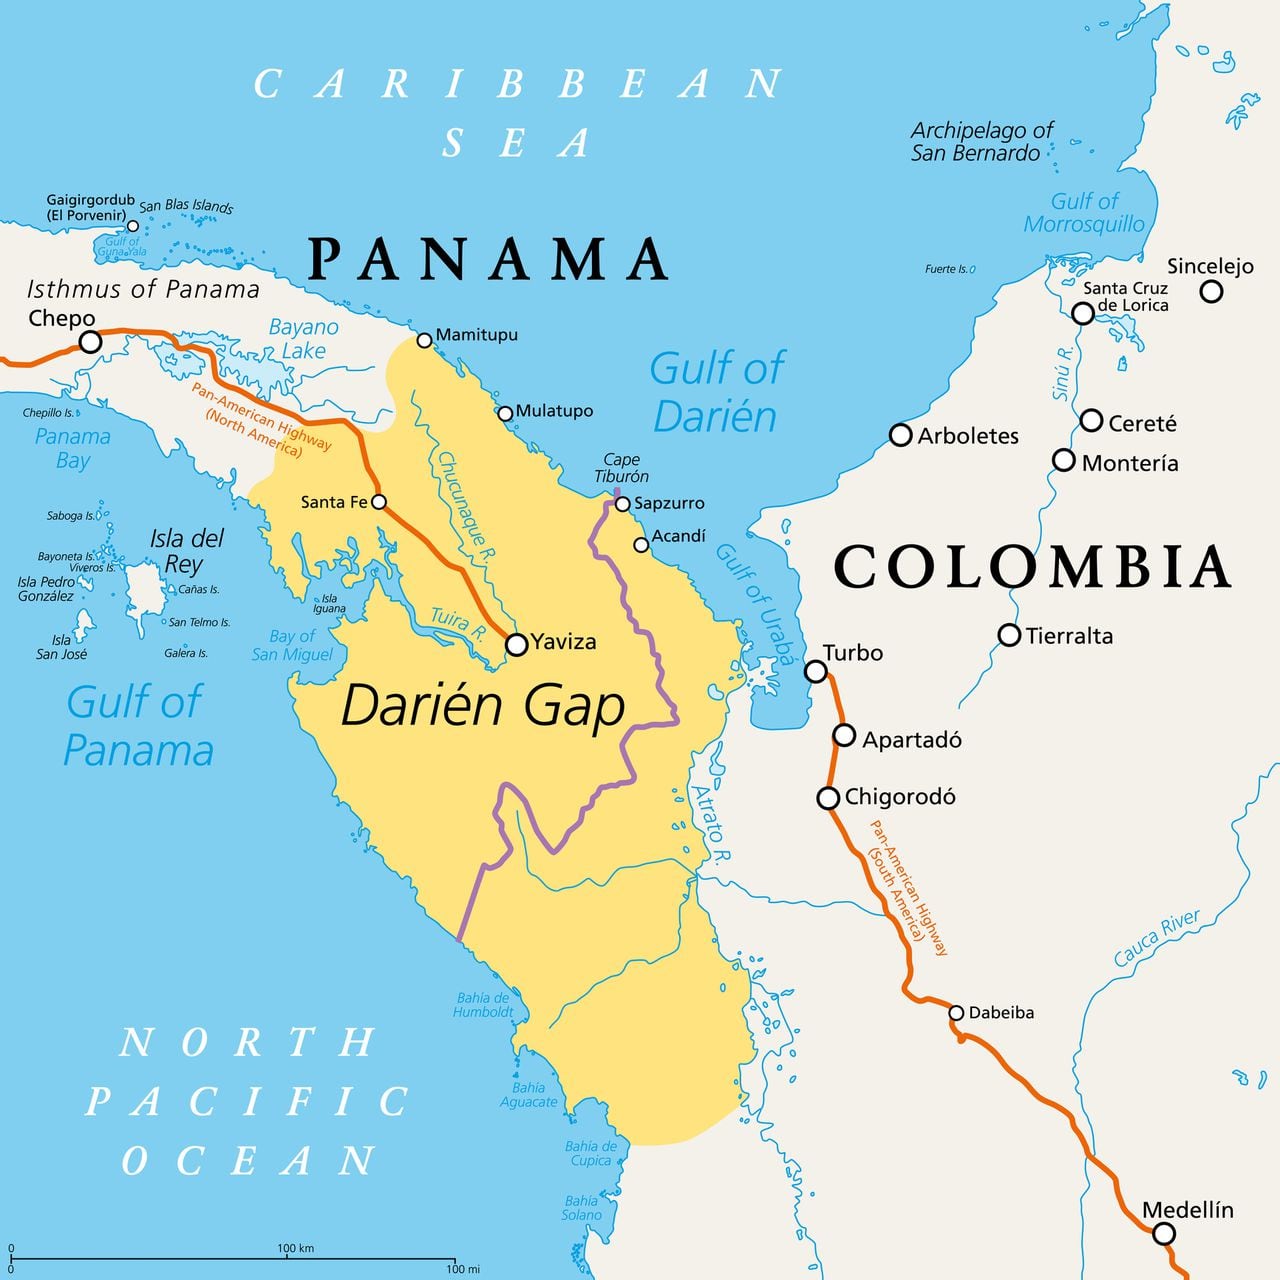 En el tejido vial de Colombia, una ruta se distingue por su constante actividad.